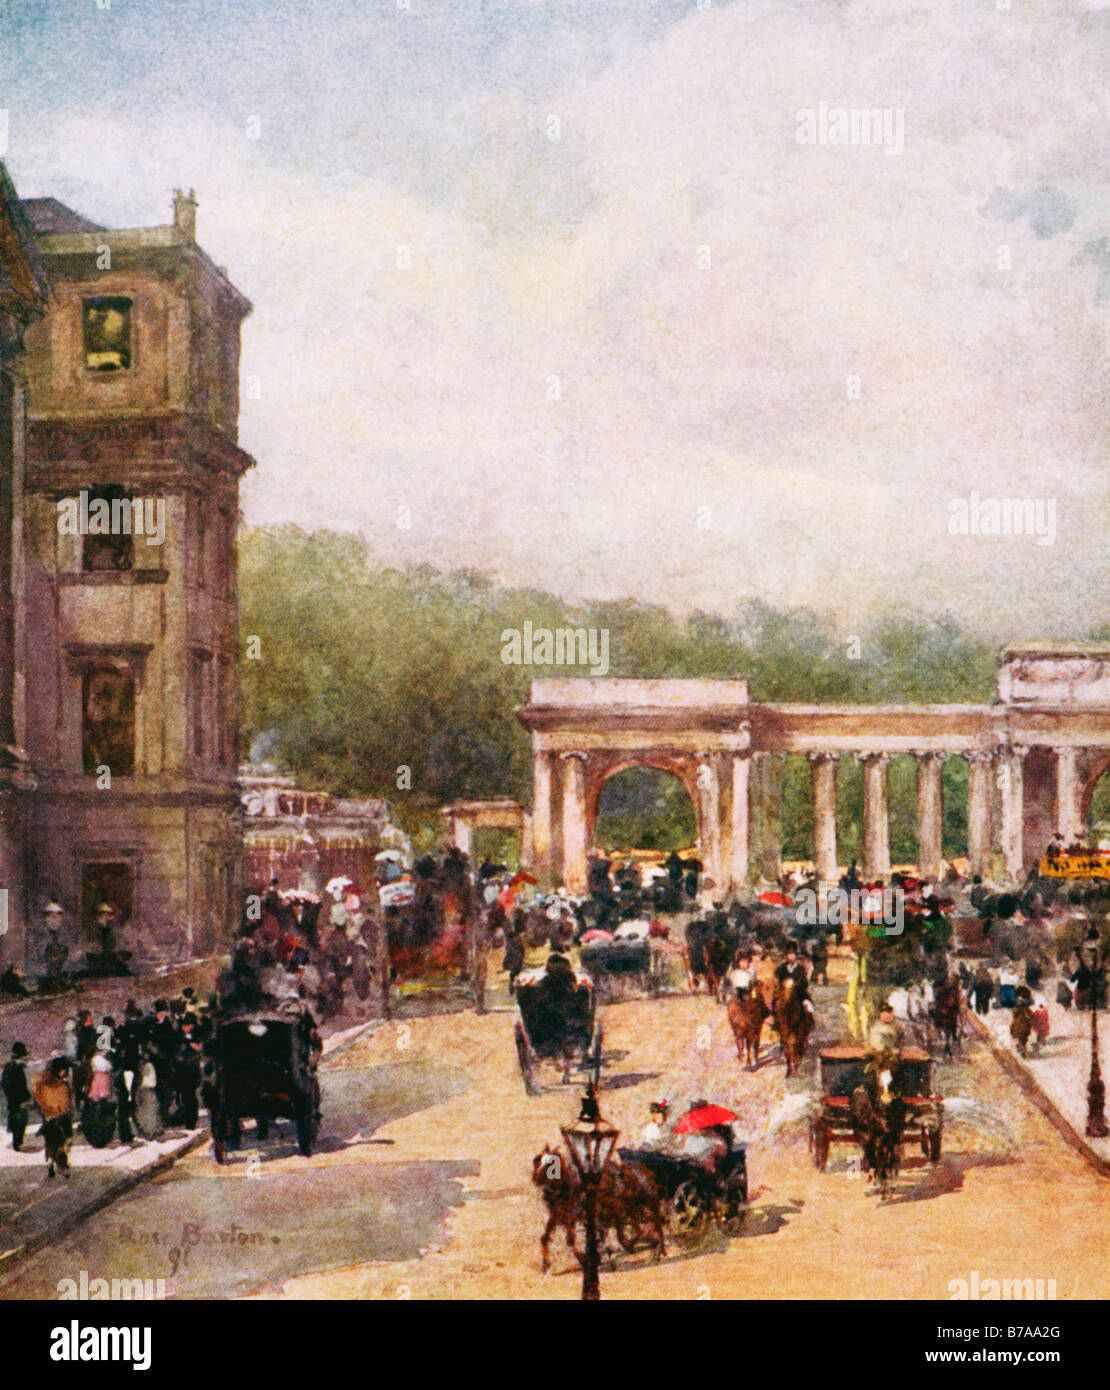 La traversée de Hyde Park Corner 1898 Peinture de Rose Barton d'une scène de rue animée dans le quartier branché de Londres Banque D'Images